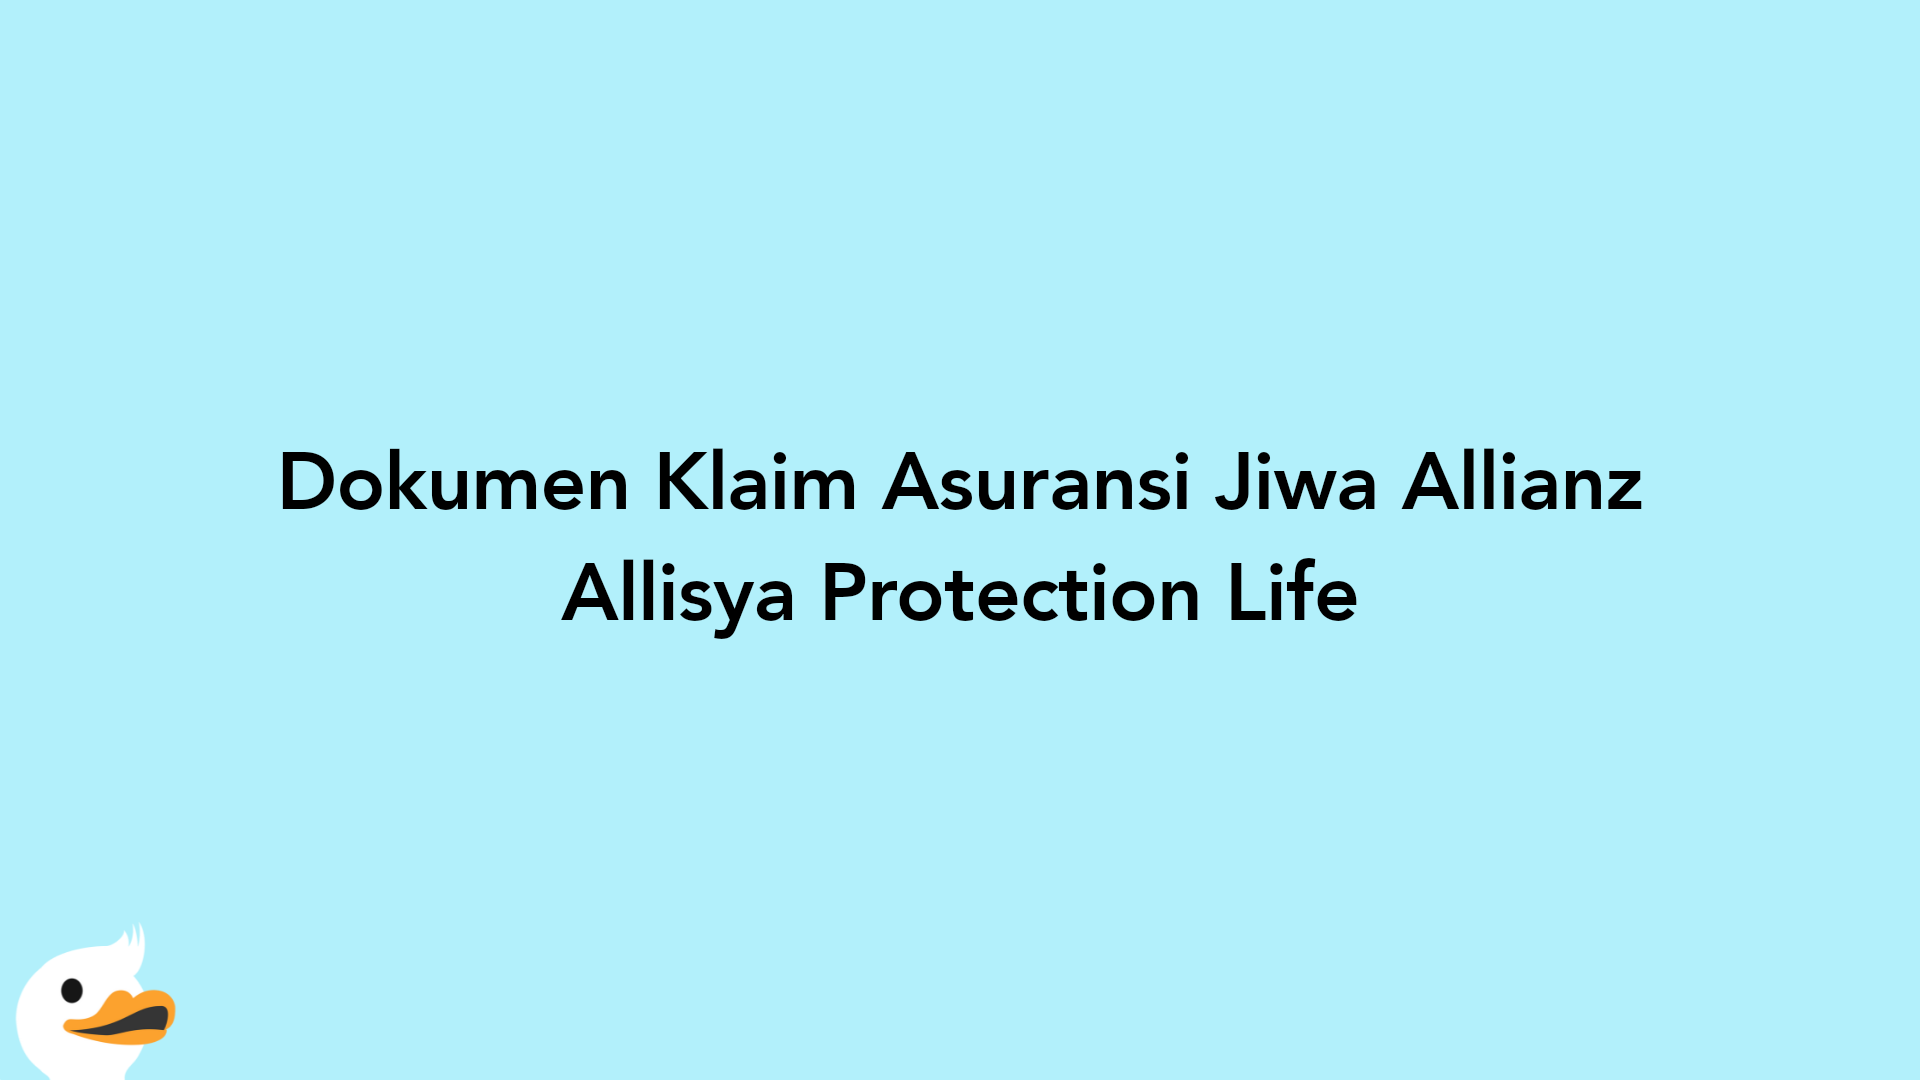 Dokumen Klaim Asuransi Jiwa Allianz Allisya Protection Life